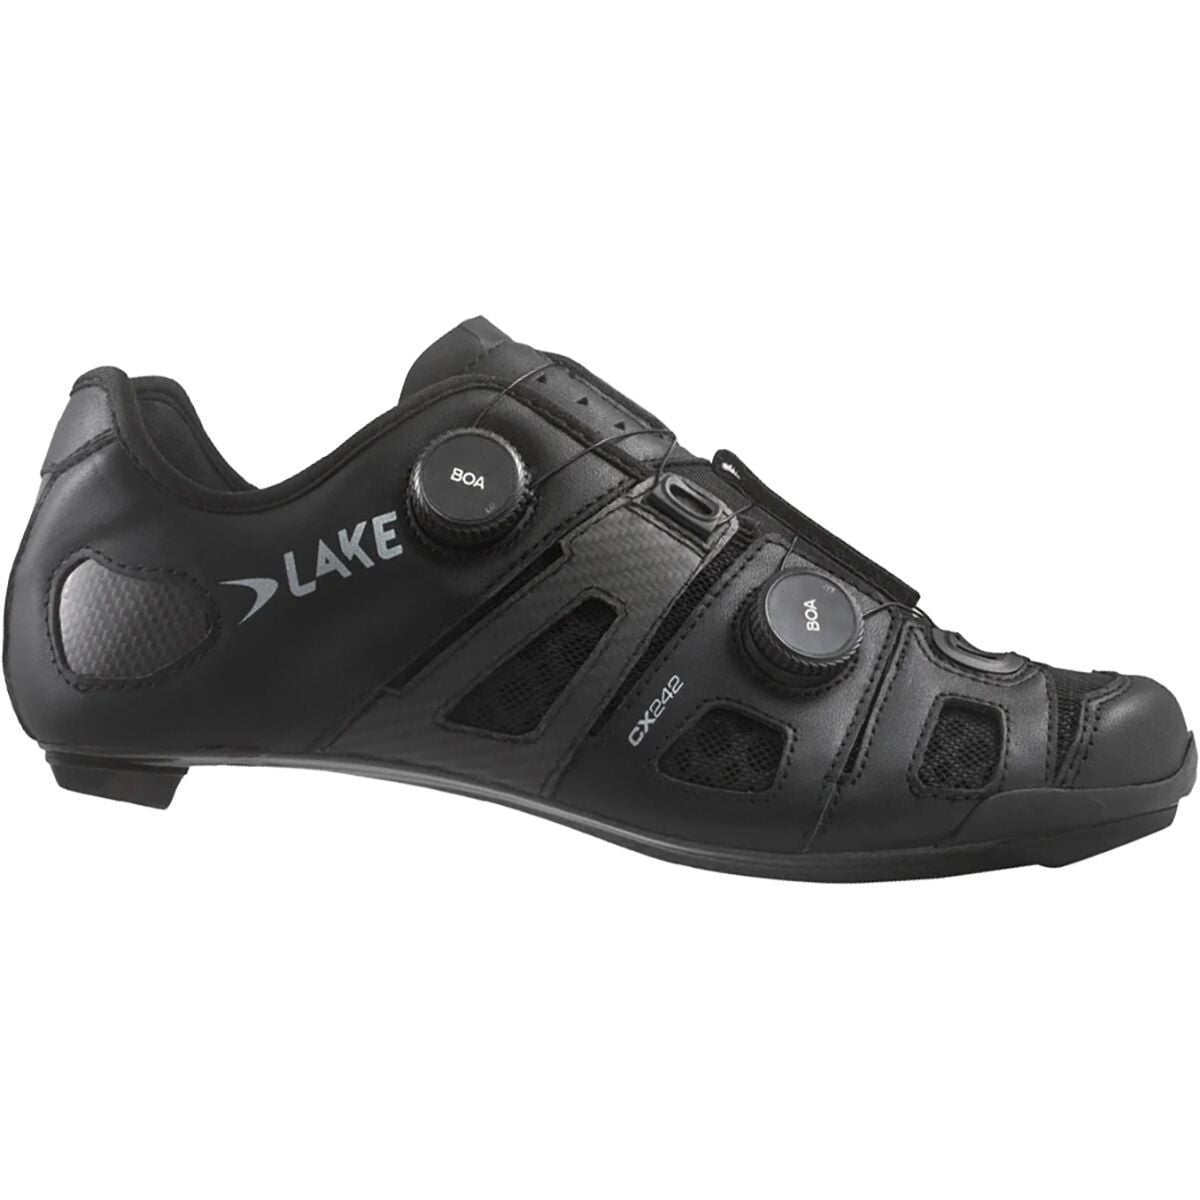 CX242 велосипедная обувь Lake